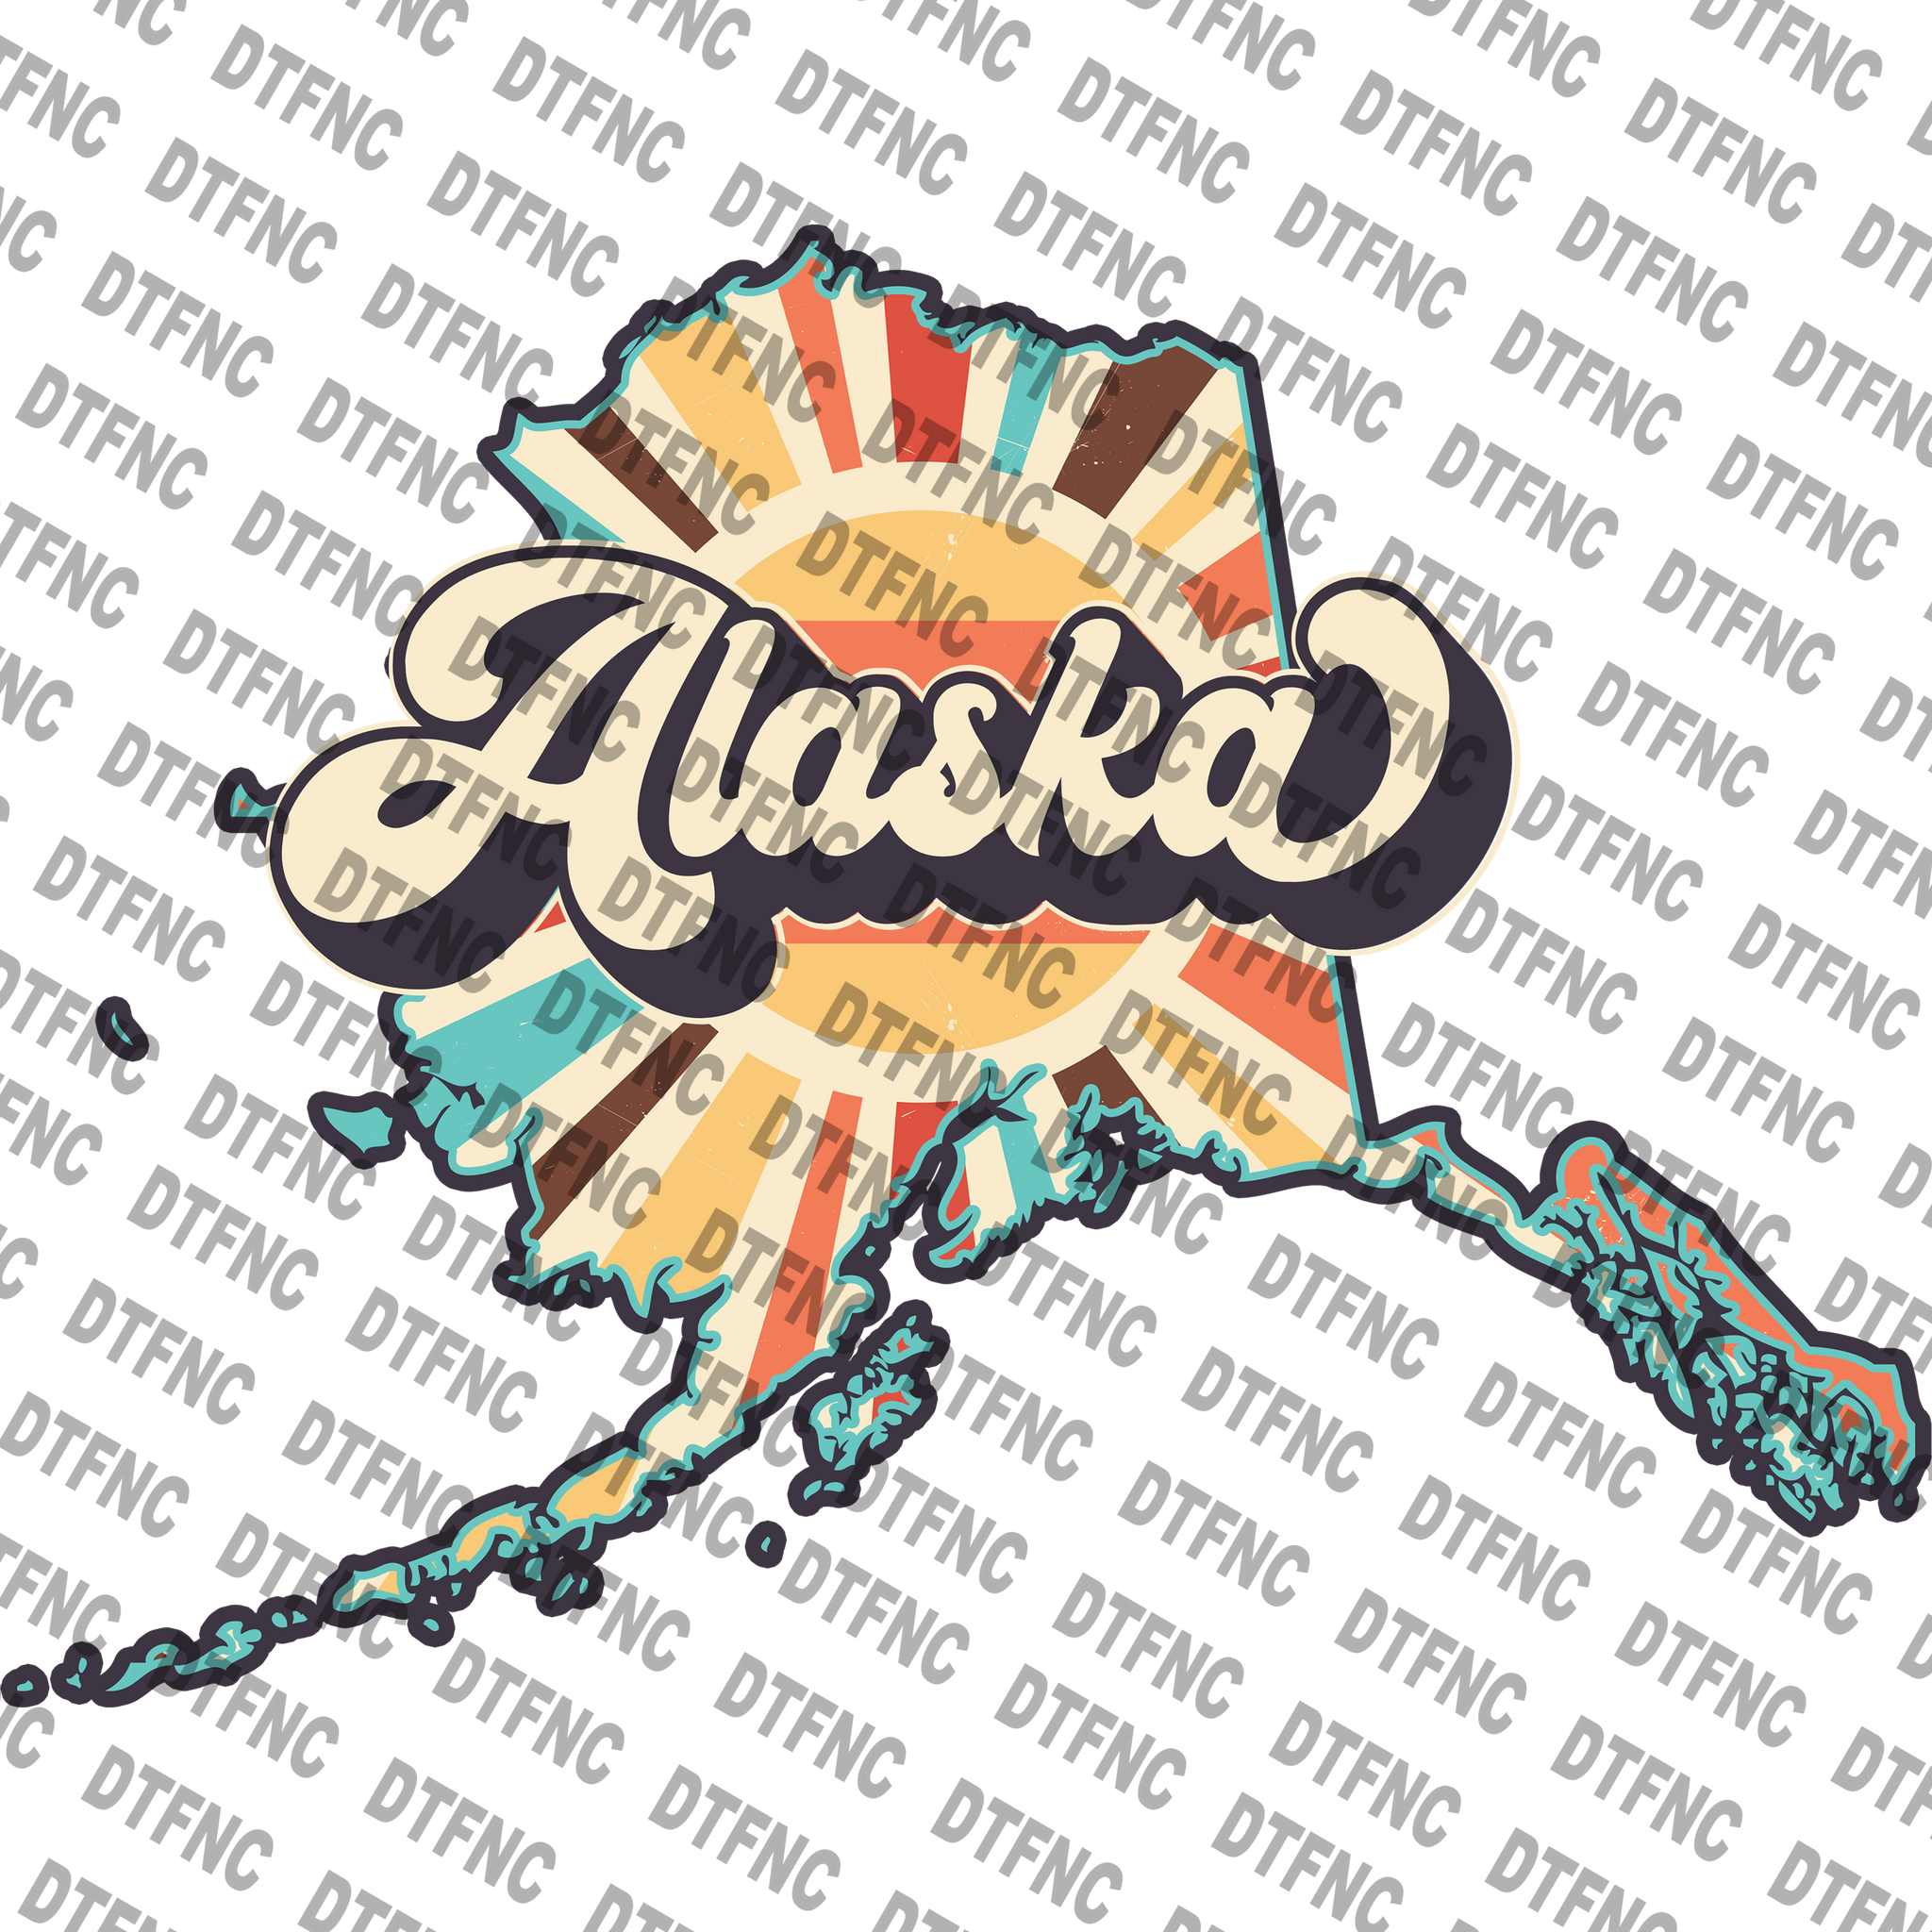 State - Alaska